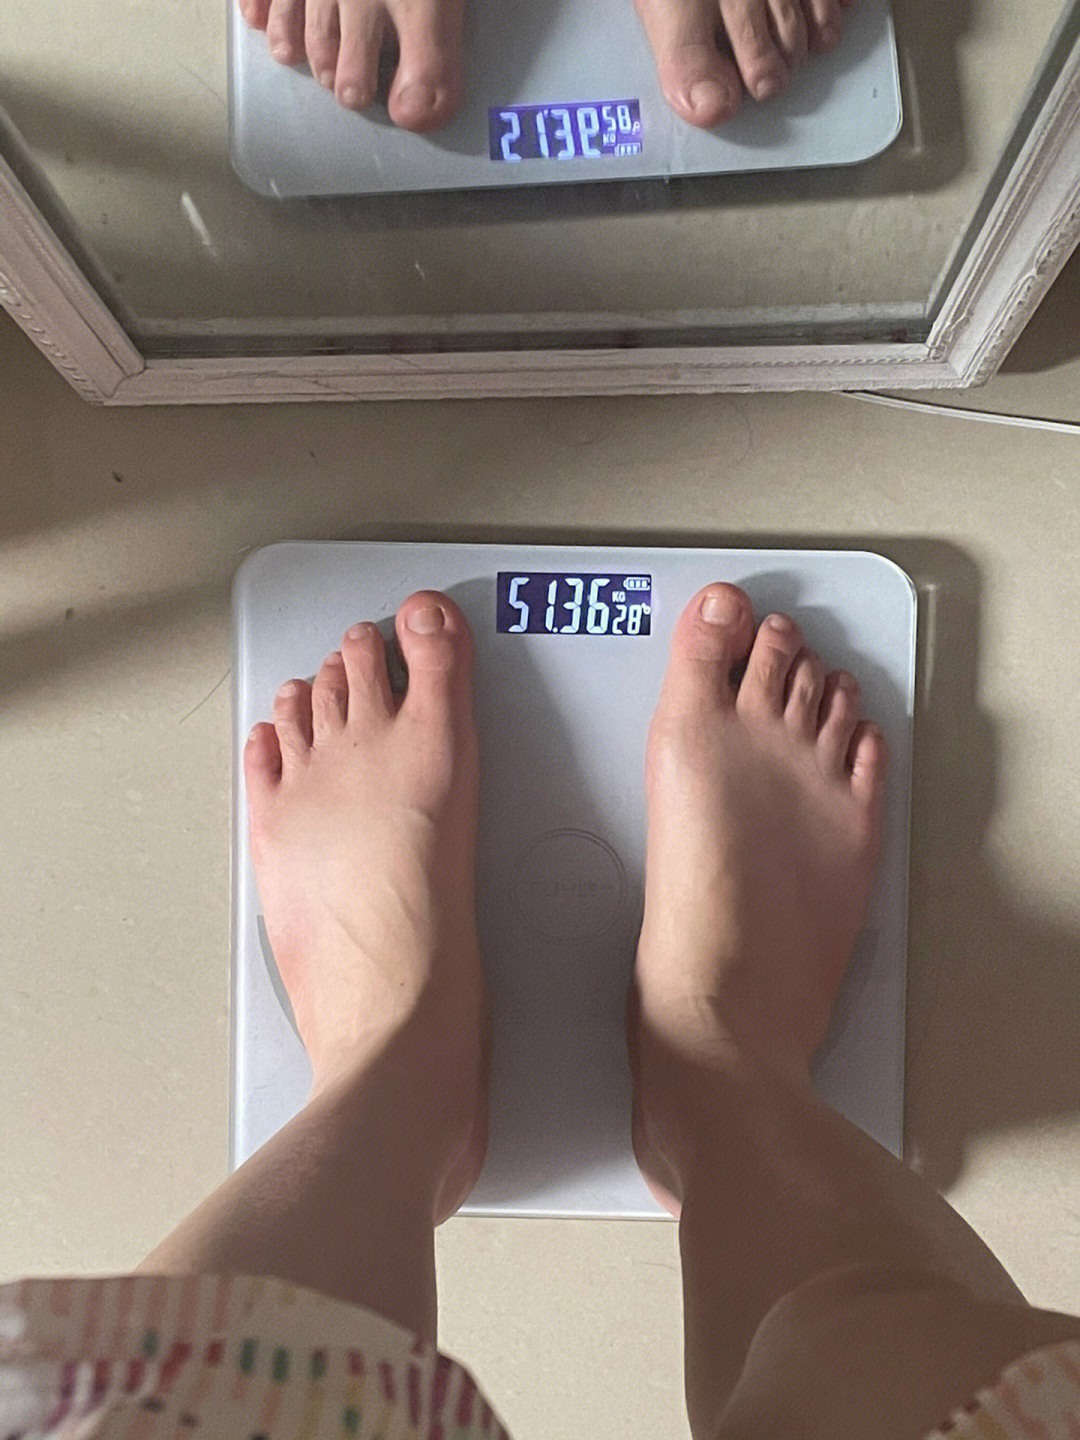 106斤瘦到86斤要多长时间第二天